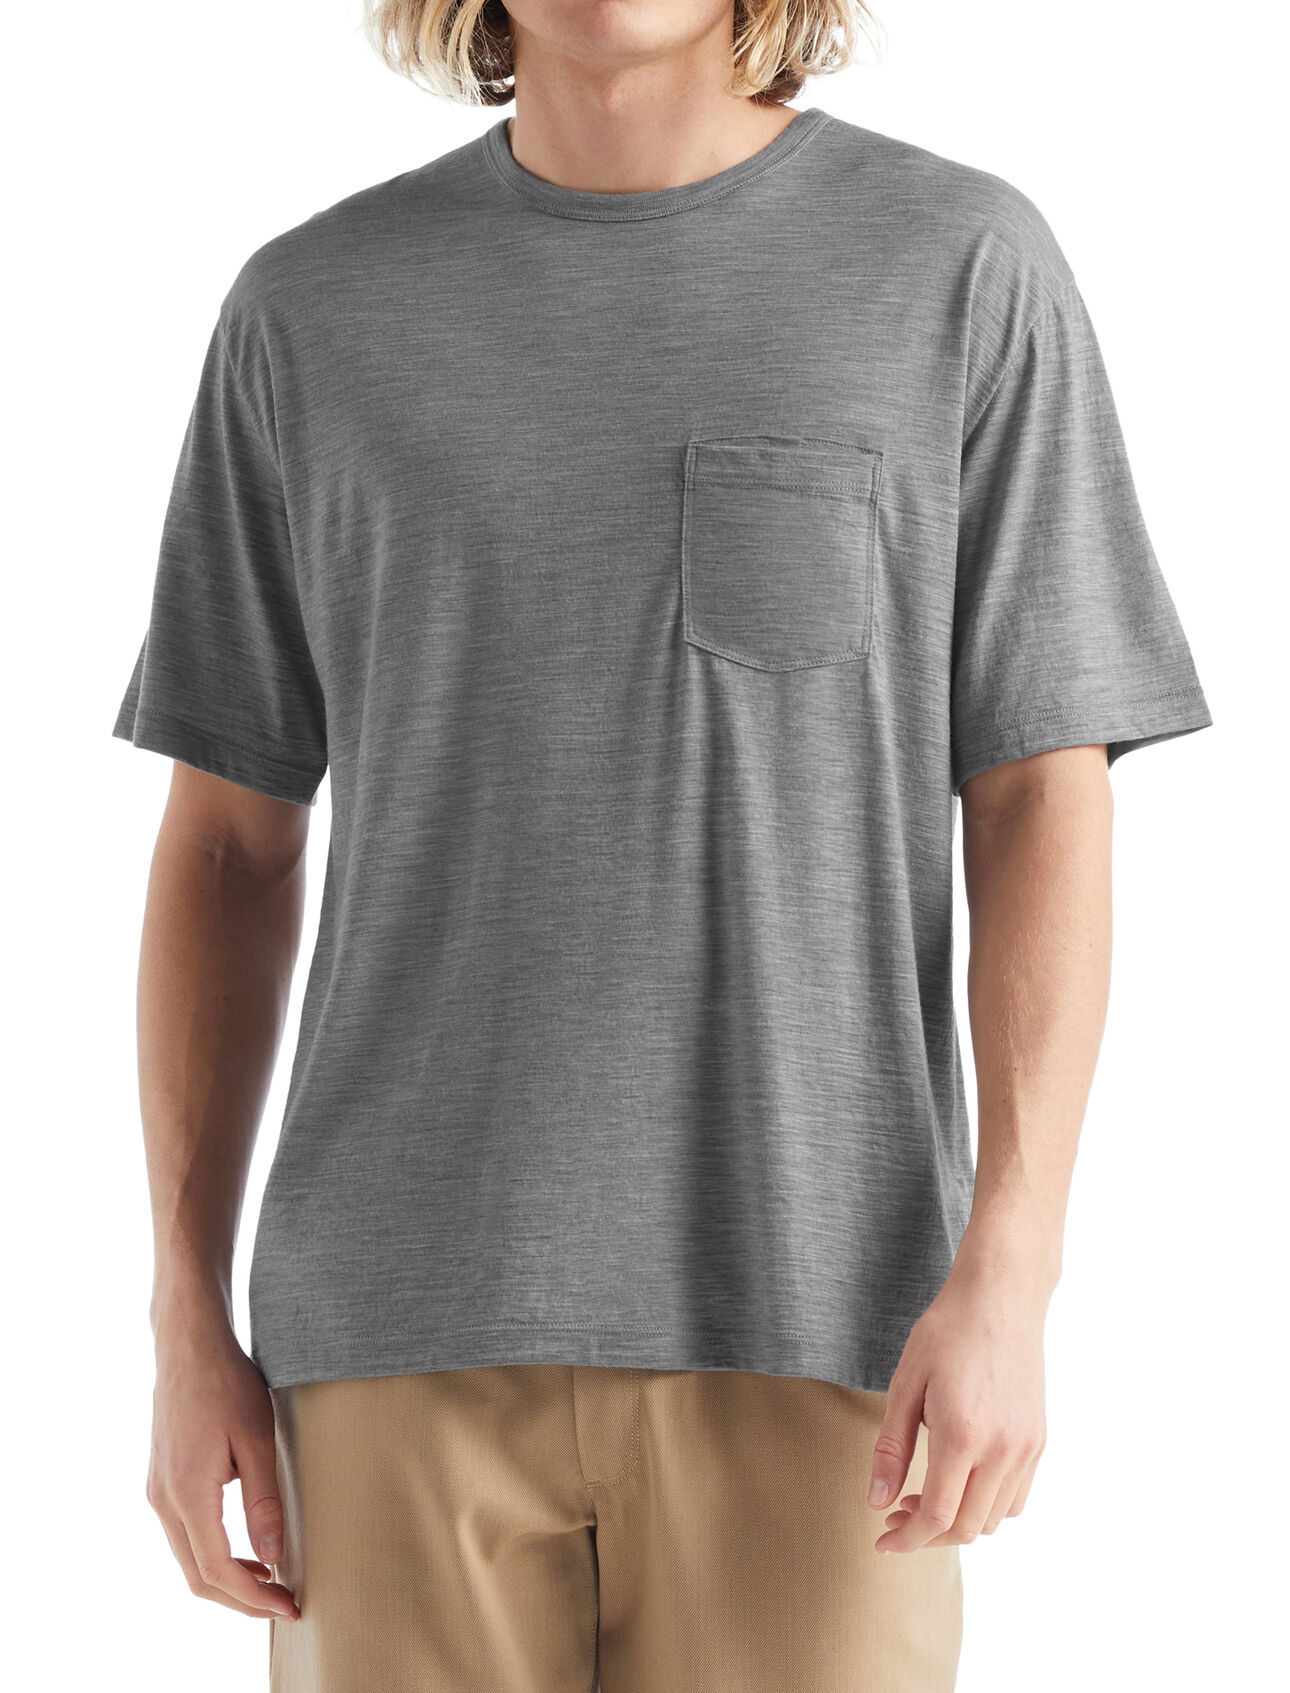 Merino Granary T-Shirt mit Brusttasche Herren Ein klassisches Pocket T-Shirt mit legerer Passform, das Komfort mit Stil verbindet, das Granary T-Shirt mit Brusttasche ist dank 100% Merinowolle weich und atmungsaktiv. 